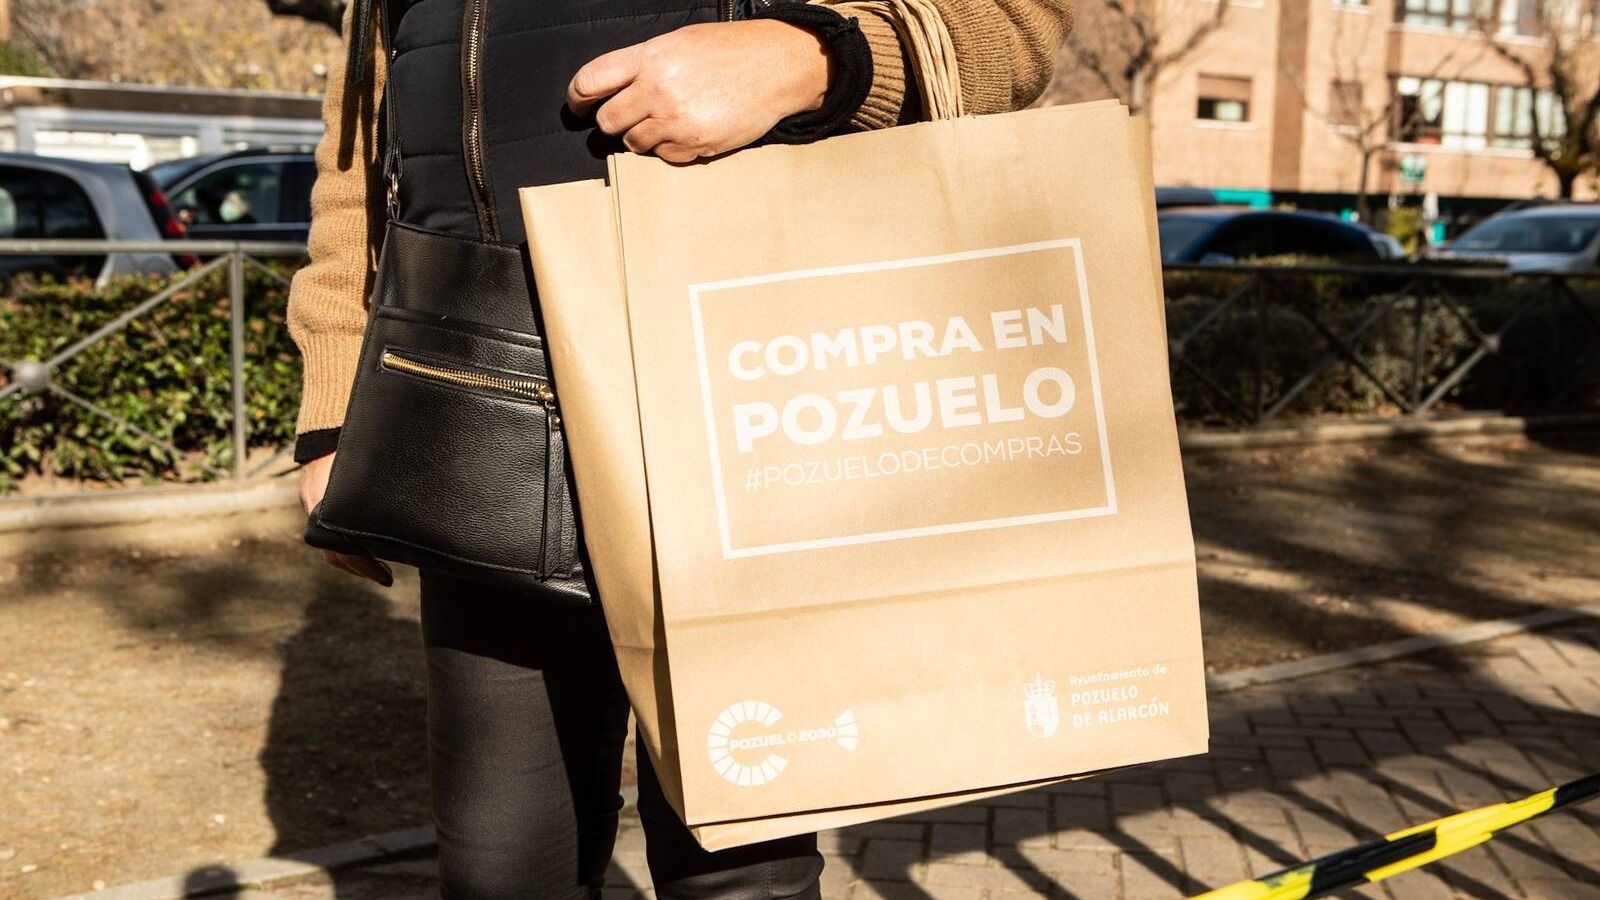 60 comercios y empresas de Pozuelo se suman a la campaña "Rebajas de Enero"